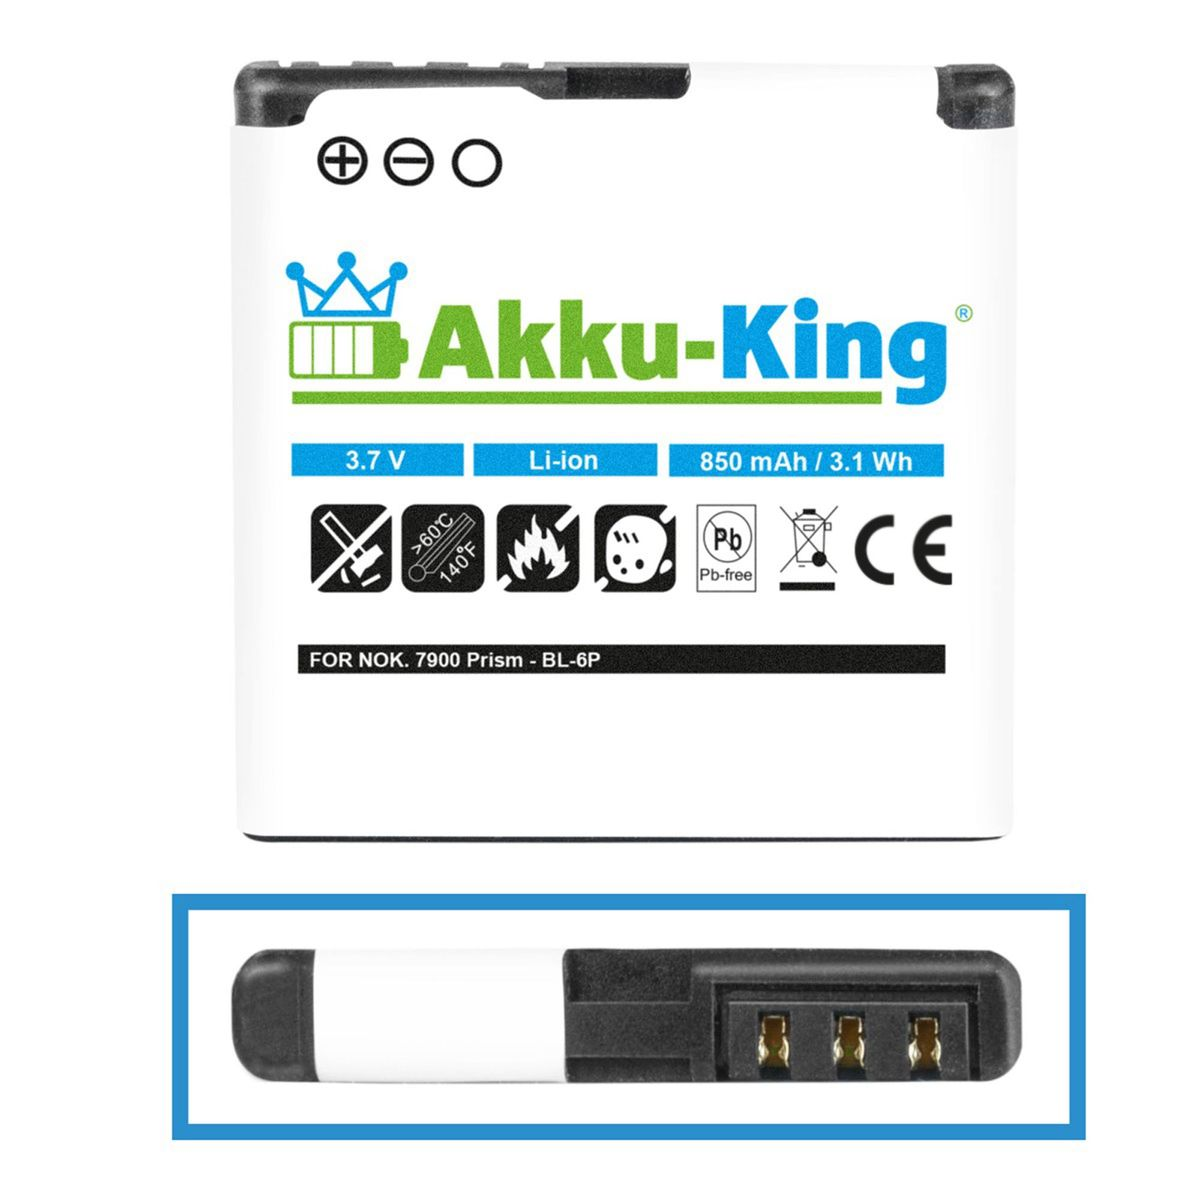 AKKU-KING Akku kompatibel mit Nokia Volt, 850mAh Handy-Akku, Li-Ion BL-6P 3.7